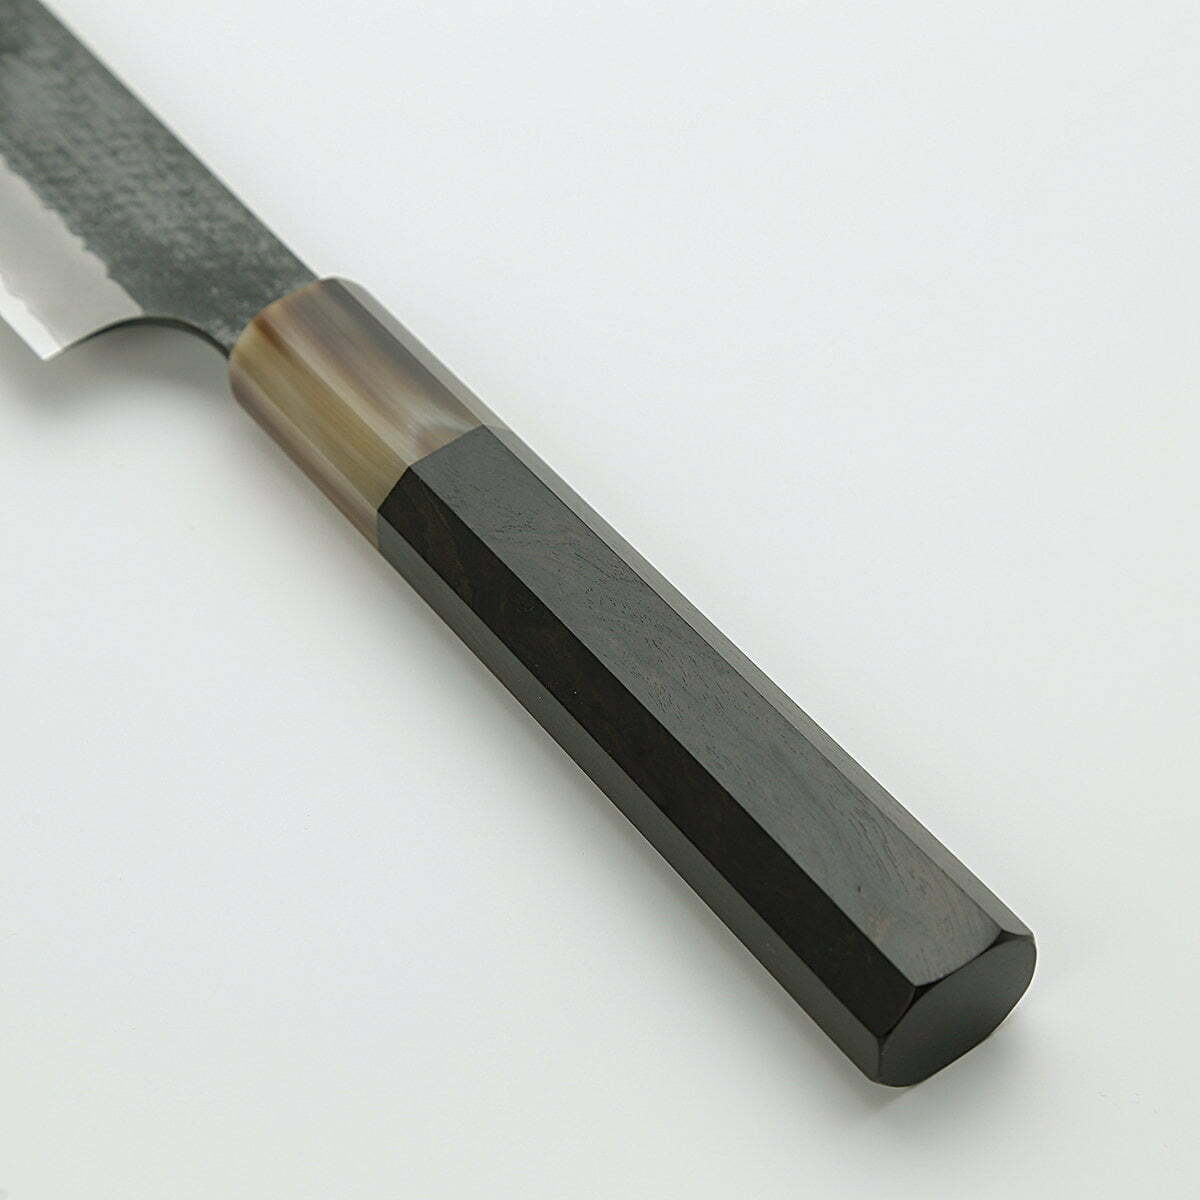 סכין חיתוך ופריסת בשר סוּגִּ’יהִיקִי 255מ״מ מחושלת בעבודת יד 3 שכבות: פלדת פחמן יפנית מתקדמת מסוג R2/SG2 עטופה פלדת אל-חלד גימור קורואיצ׳י שחור עם ריקוע פטיש ניגארה יפן